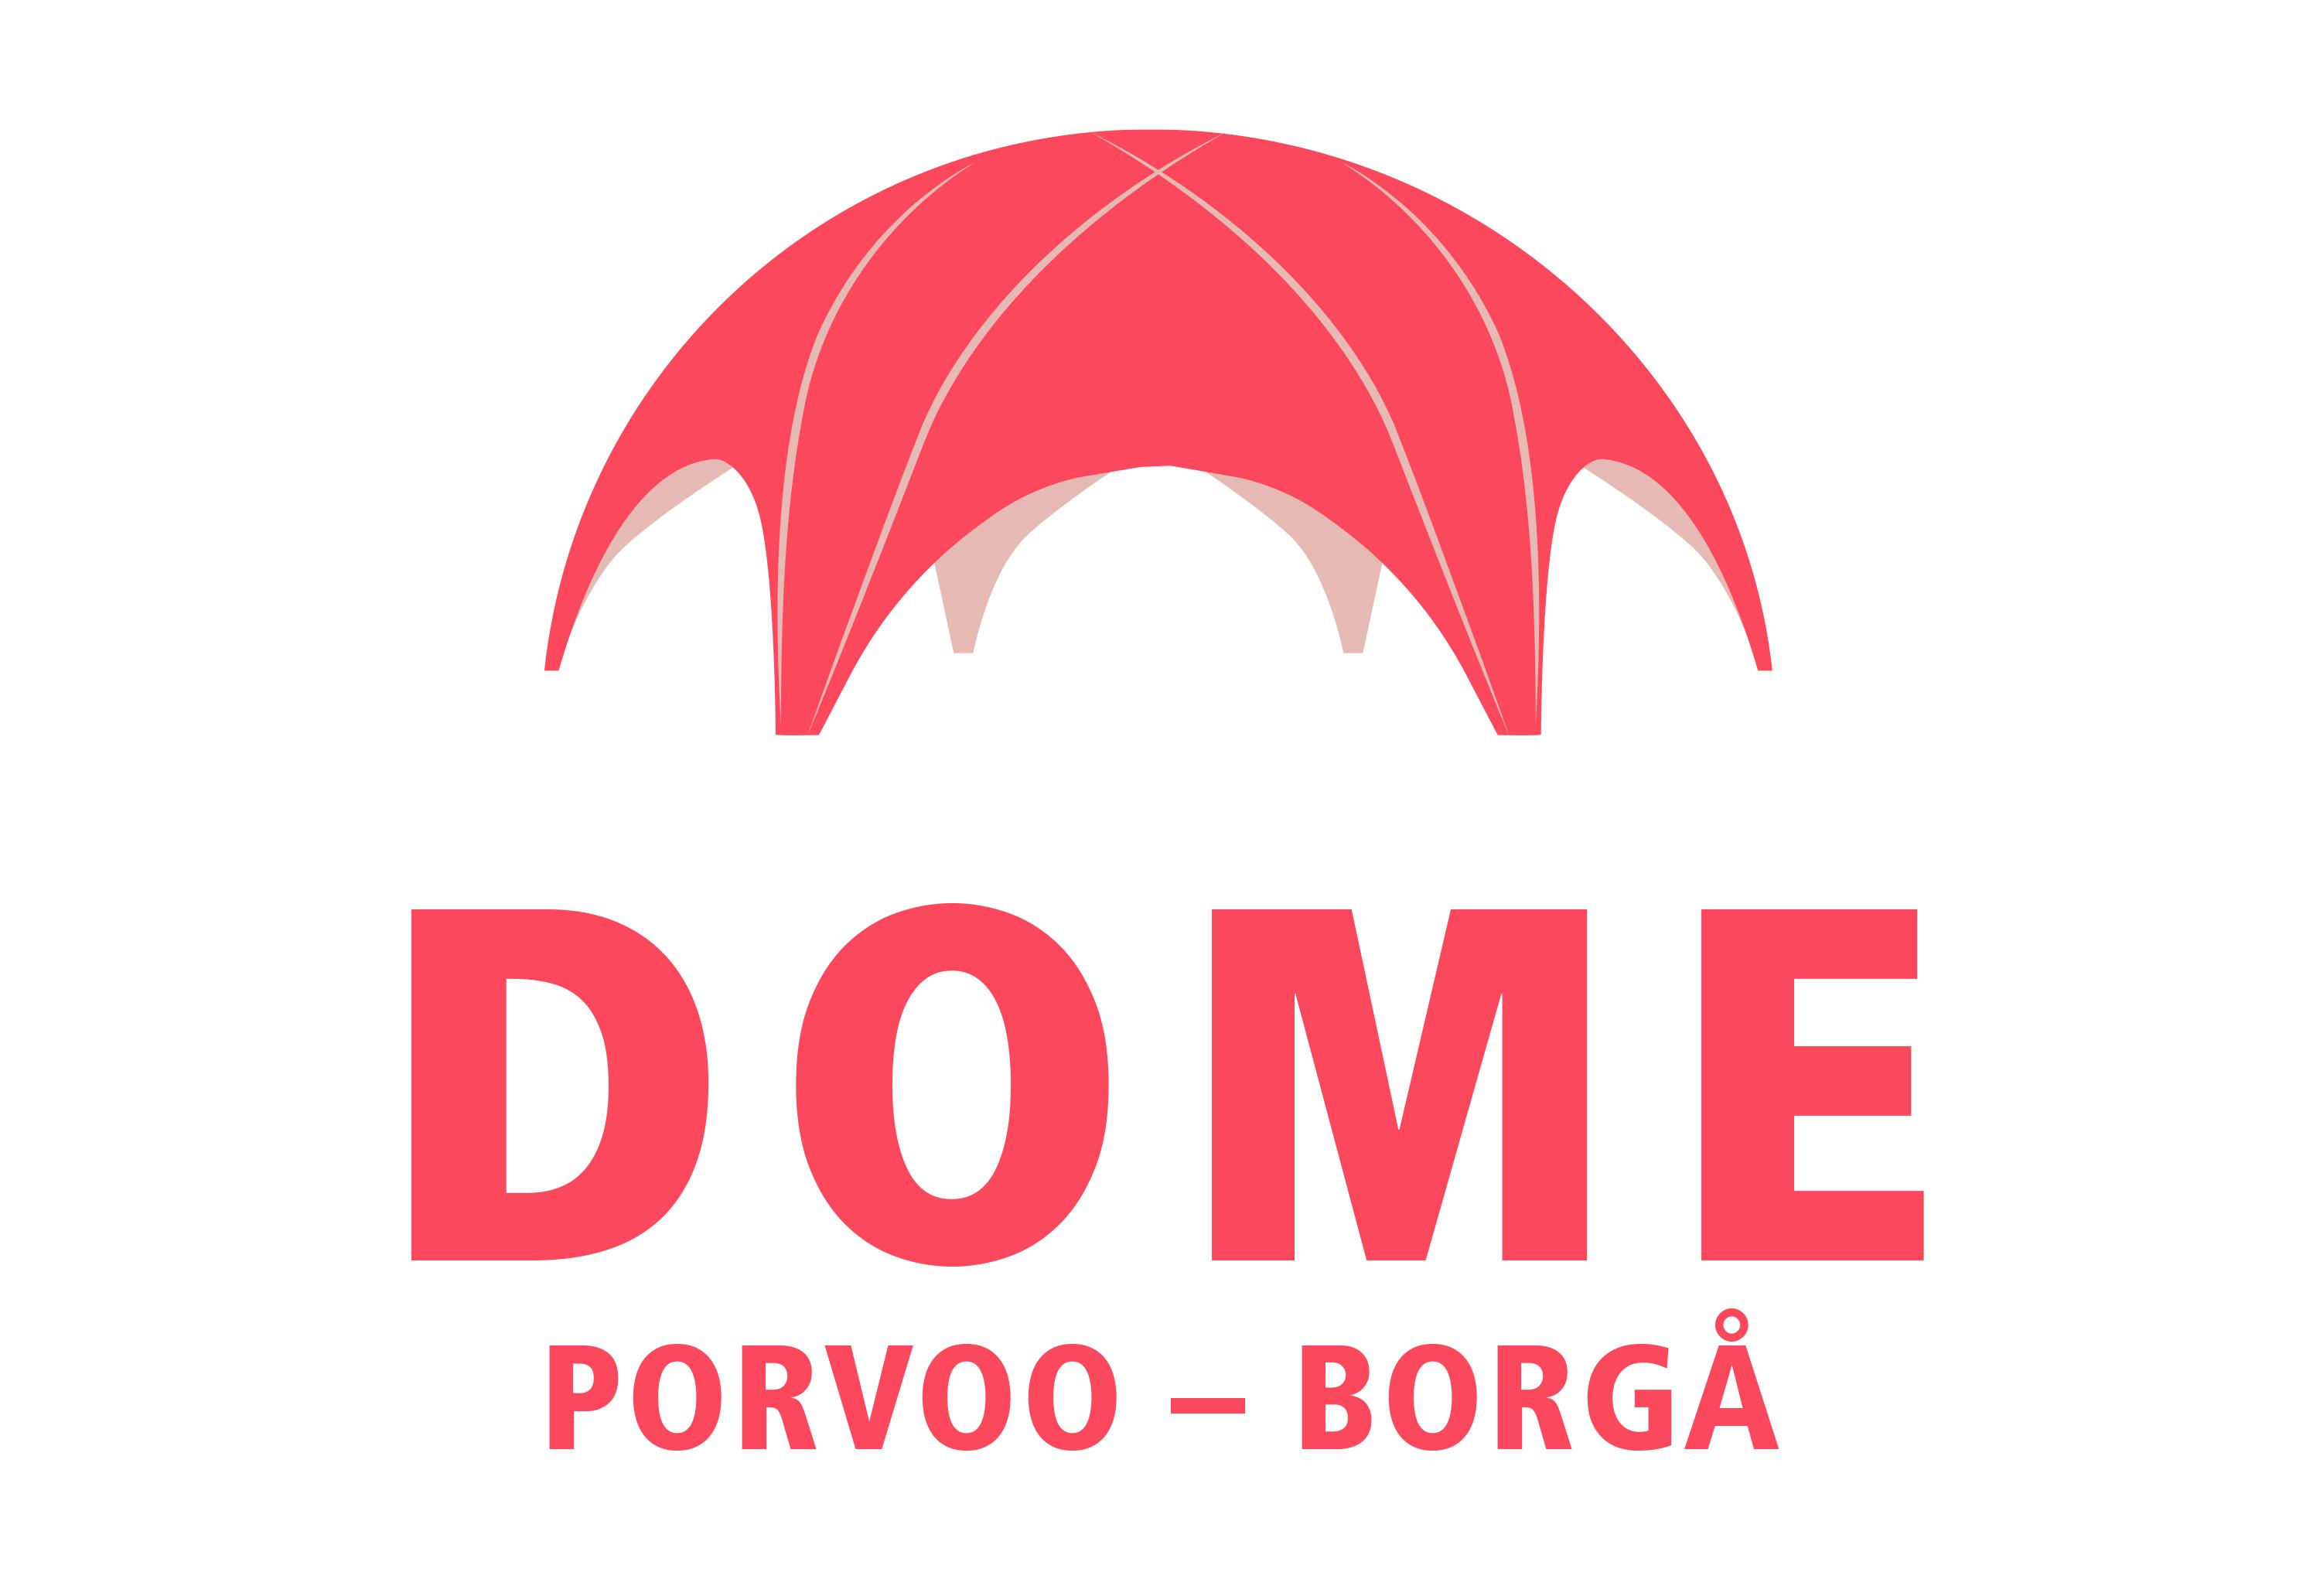 Graphic DOME Porvoo - Borgå.